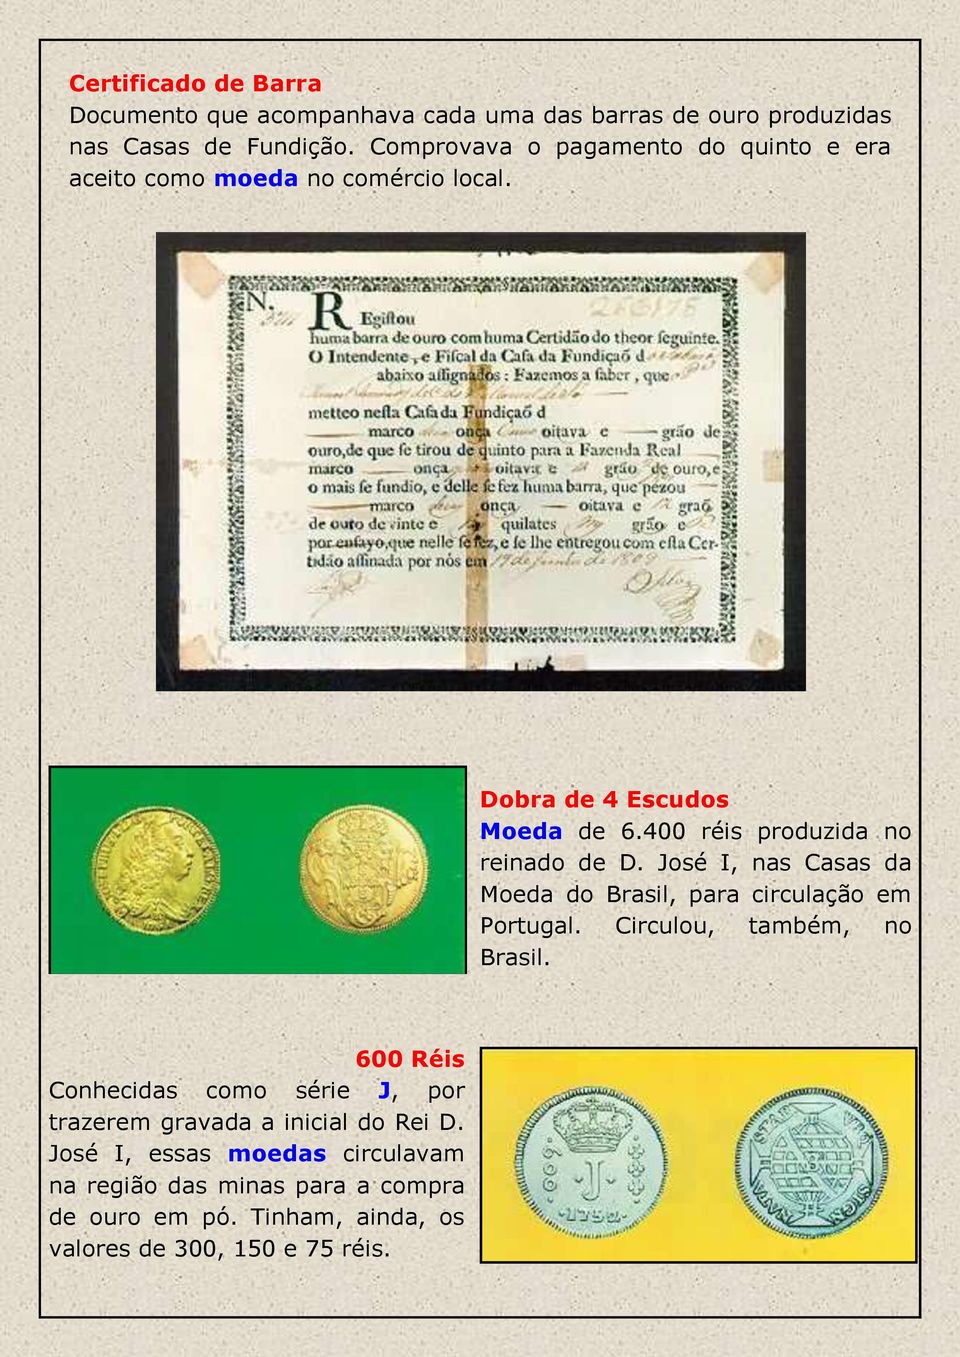 400 réis produzida no reinado de D. José I, nas Casas da Moeda do Brasil, para circulação em Portugal. Circulou, também, no Brasil.